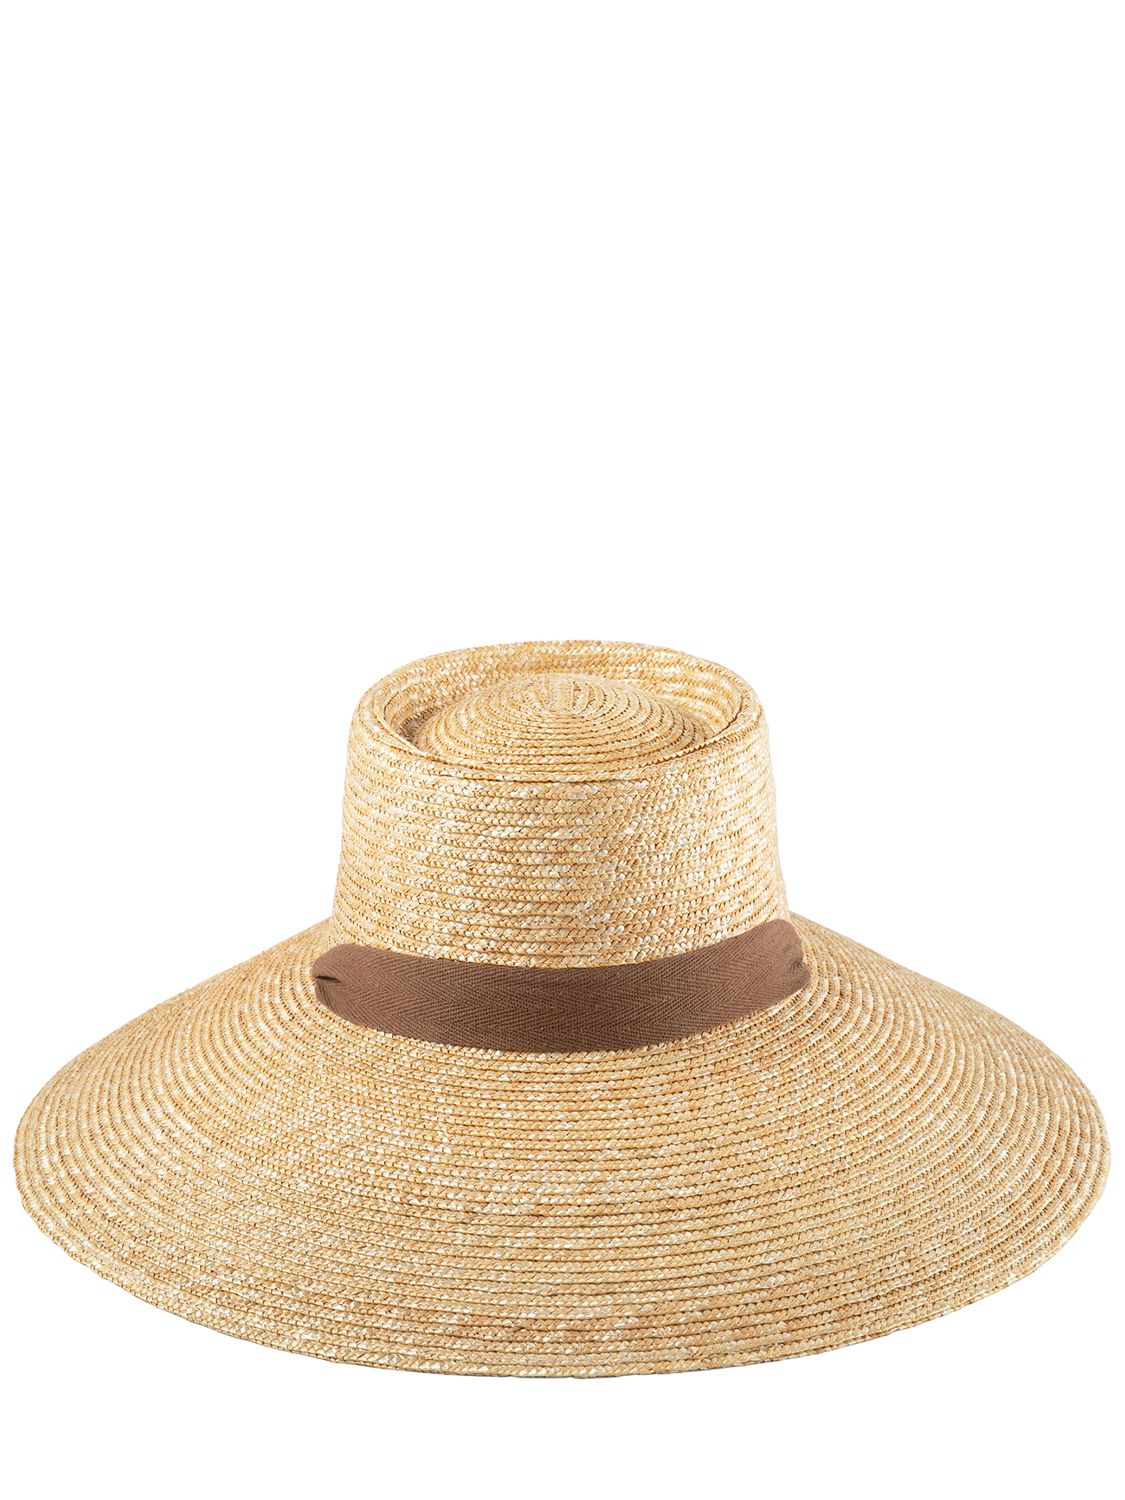 Paloma Sun Straw Hat